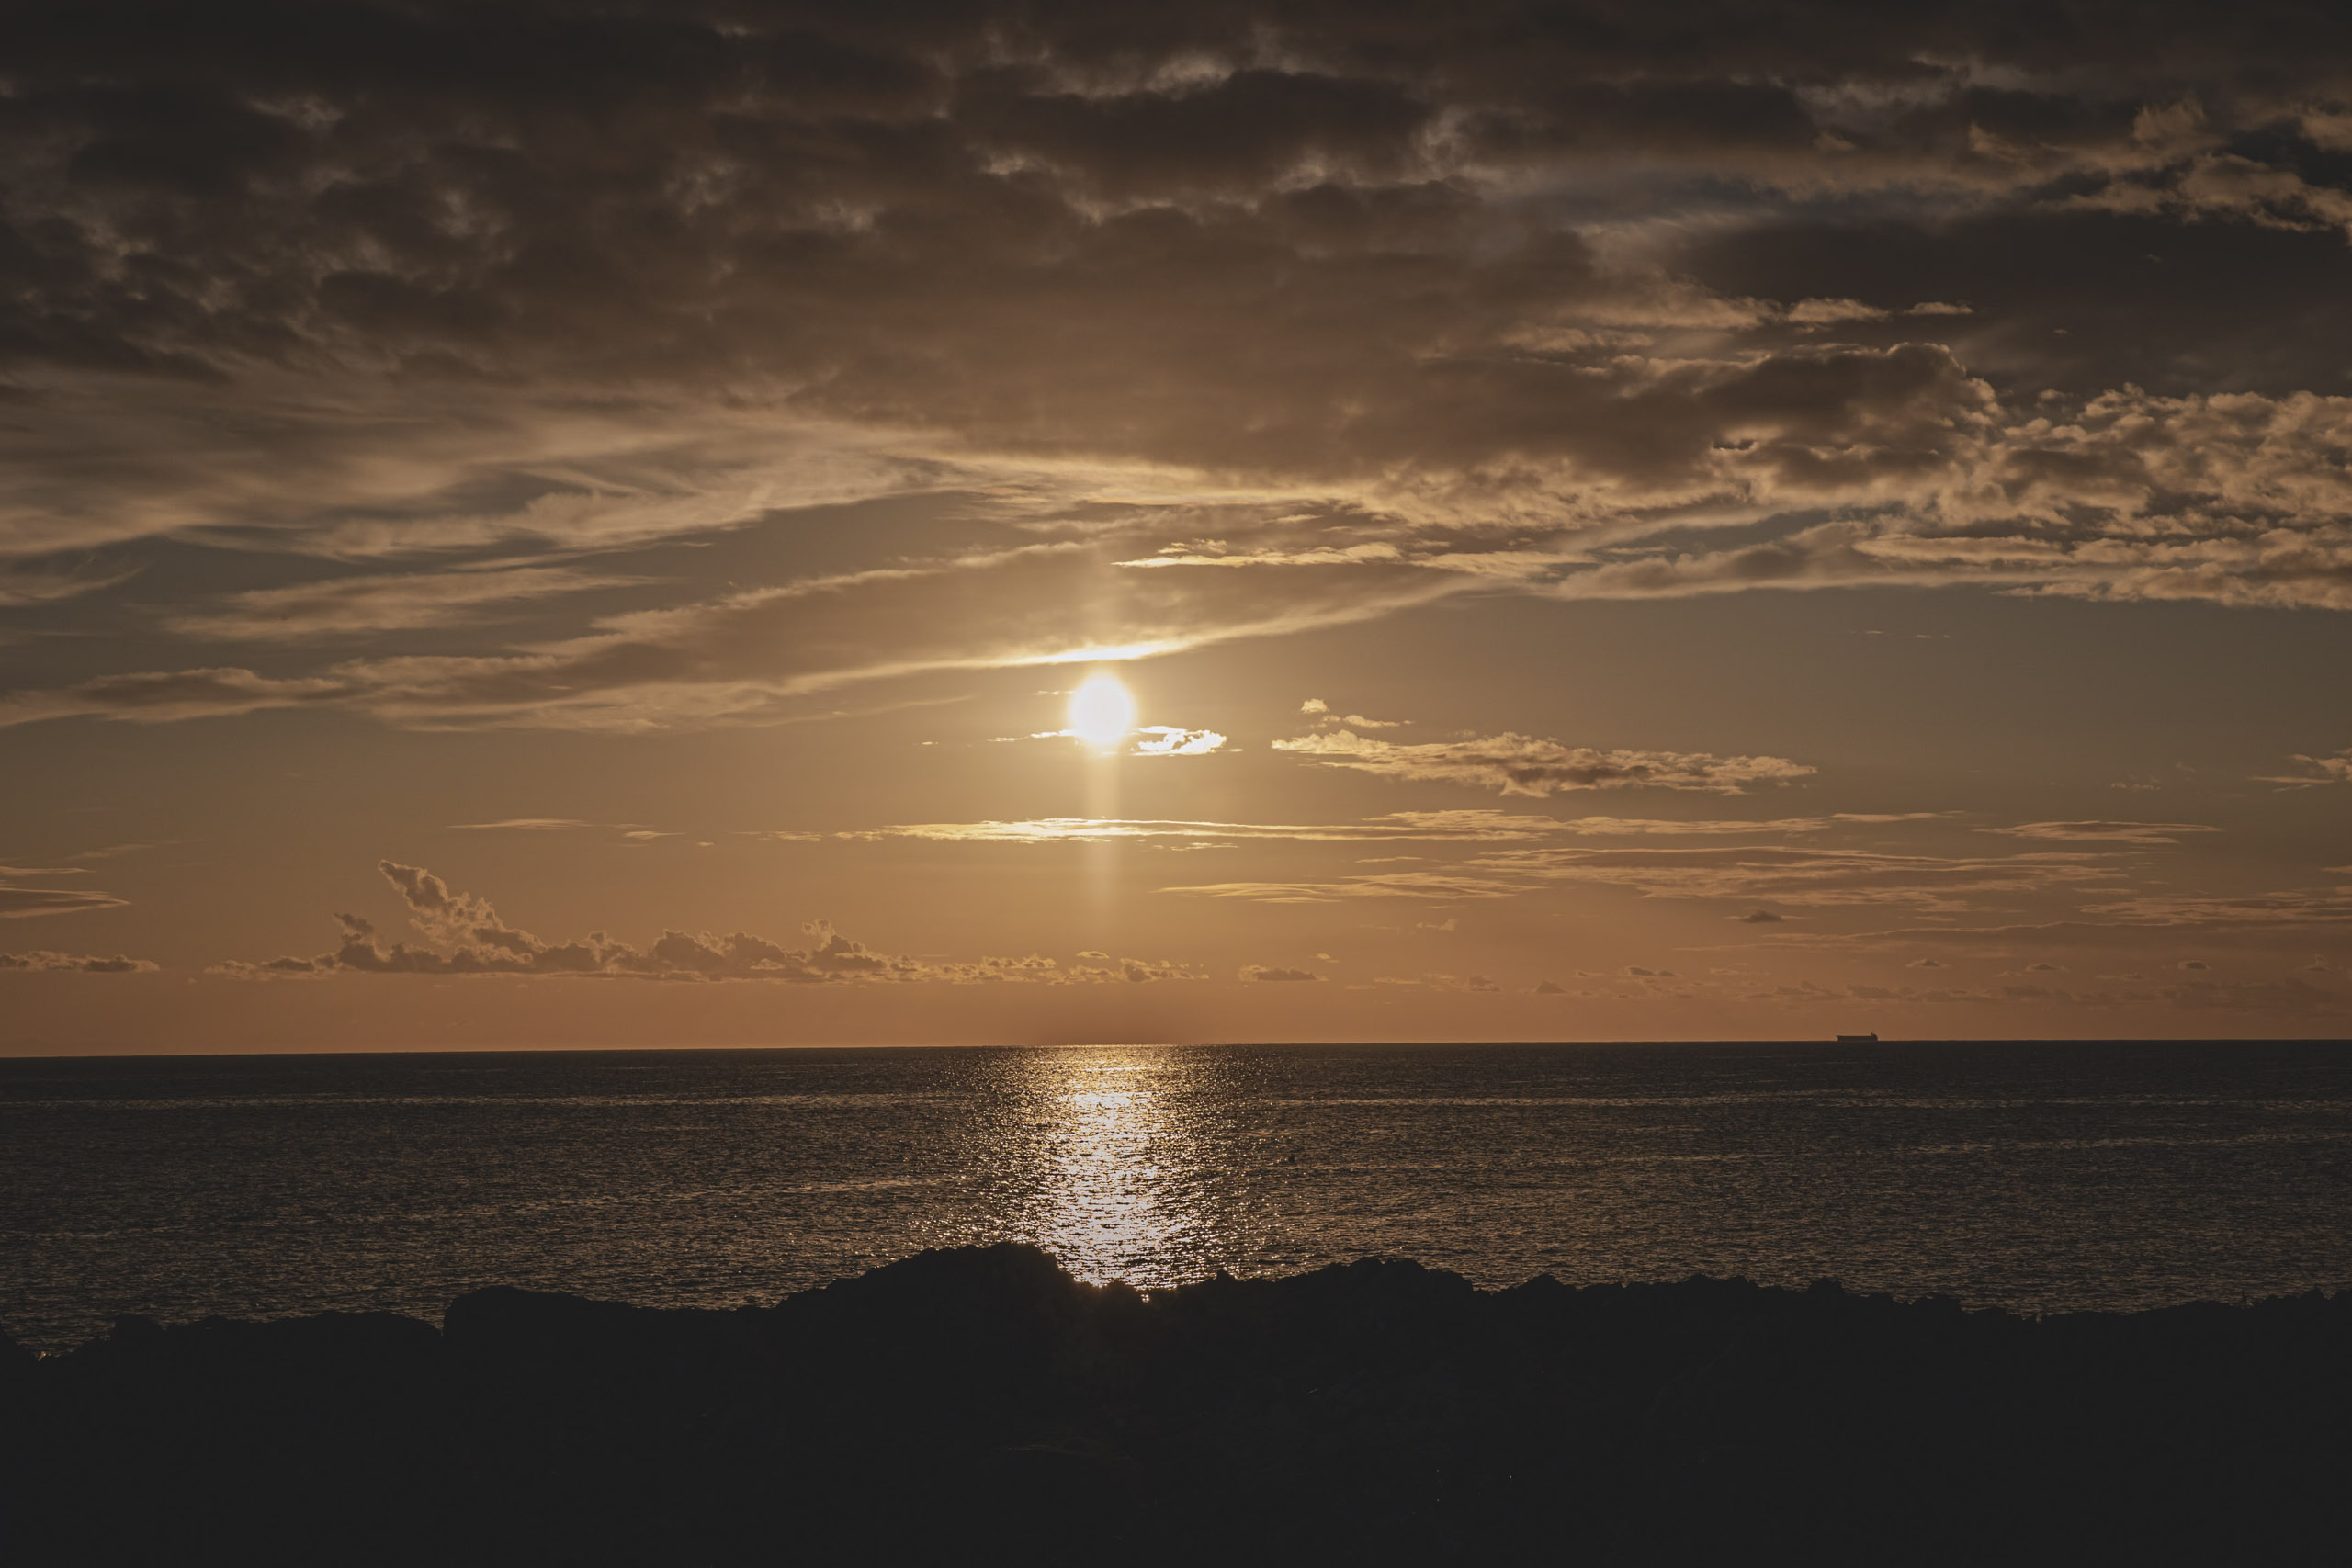 Die Sonne geht über dem Ozean unter und wirft einen goldenen Widerschein auf das Wasser, mit einer felsigen Küstenlinie im Vordergrund und einem entfernten Schiff am Horizont unter einem teilweise bewölkten Himmel. © Fotografie Tomas Rodriguez